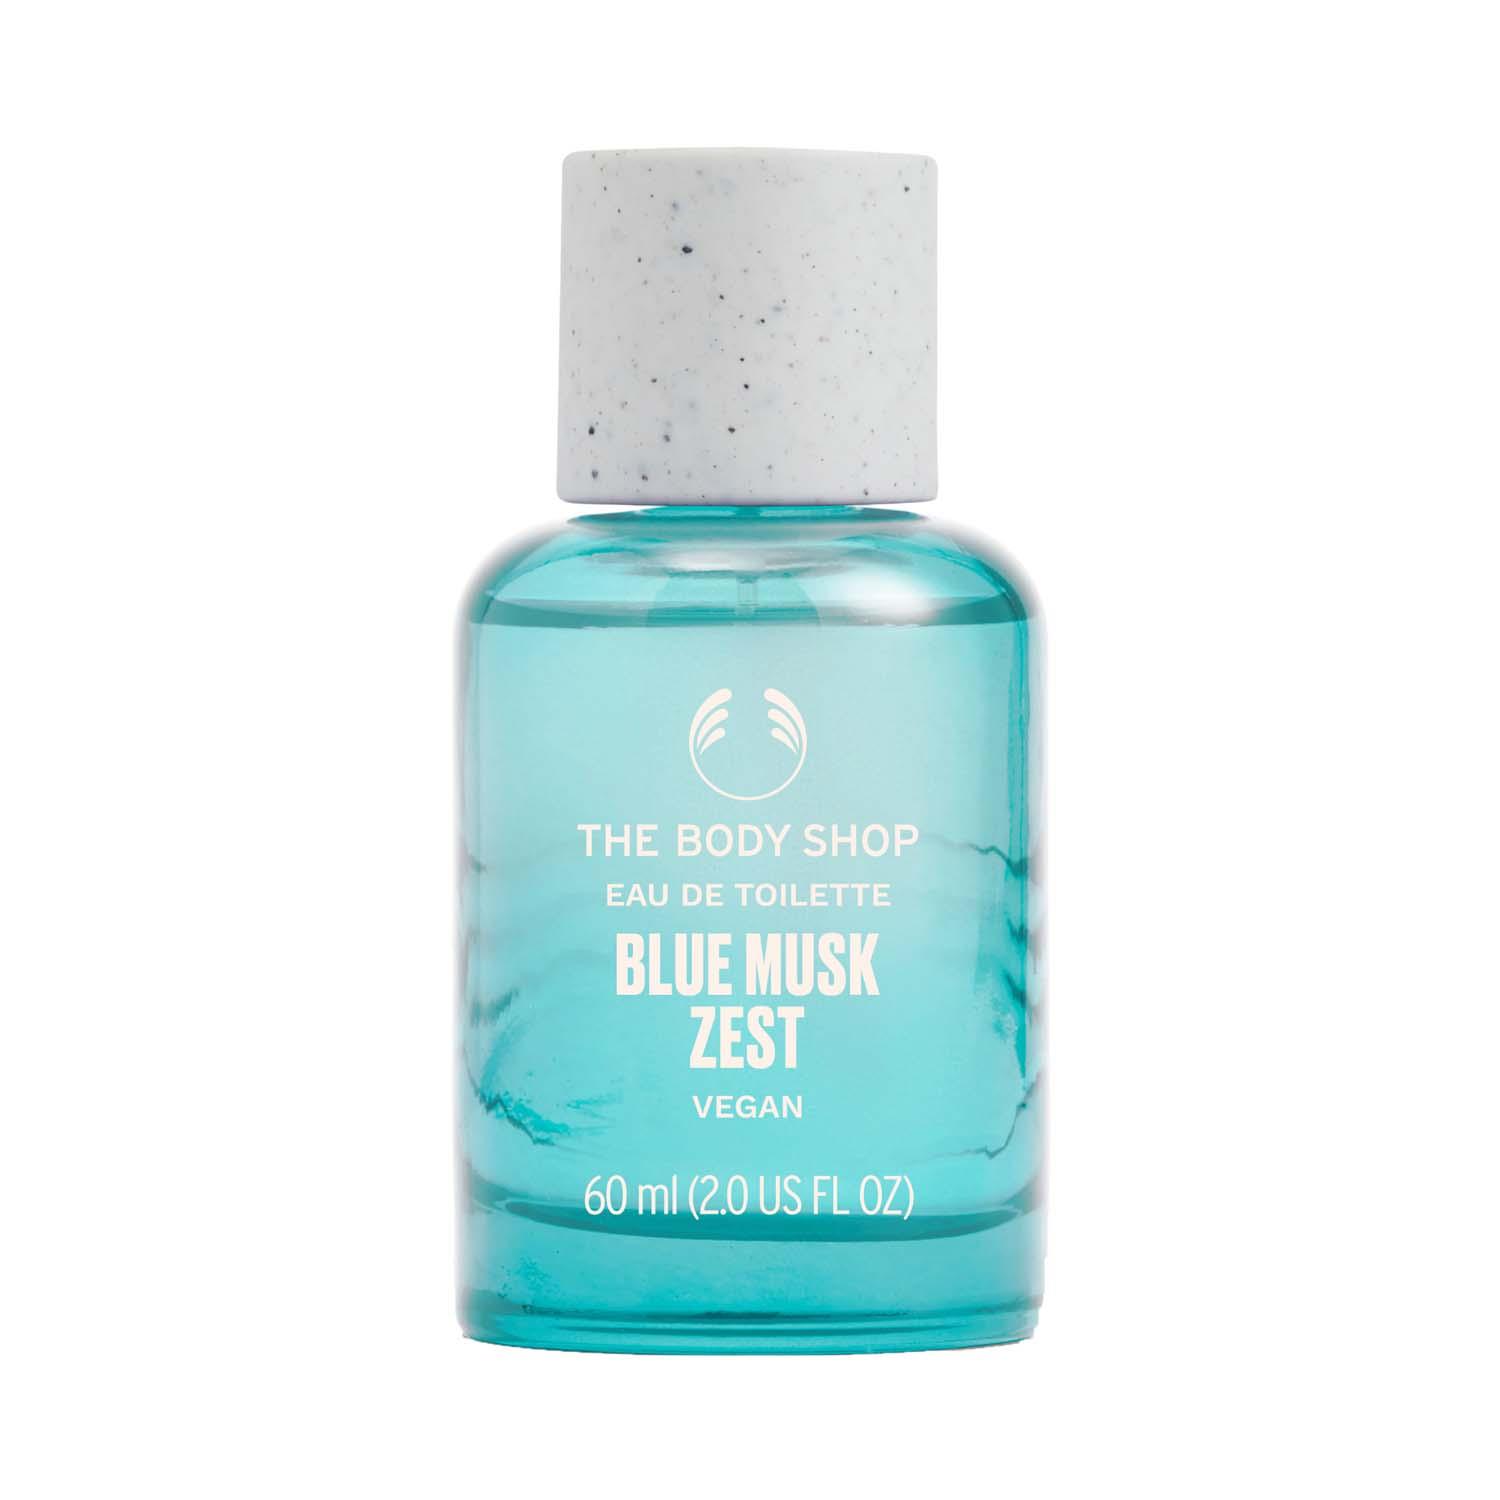 The Body Shop | The Body Shop Blue Musk Zest Eau De Toilette (60ml)